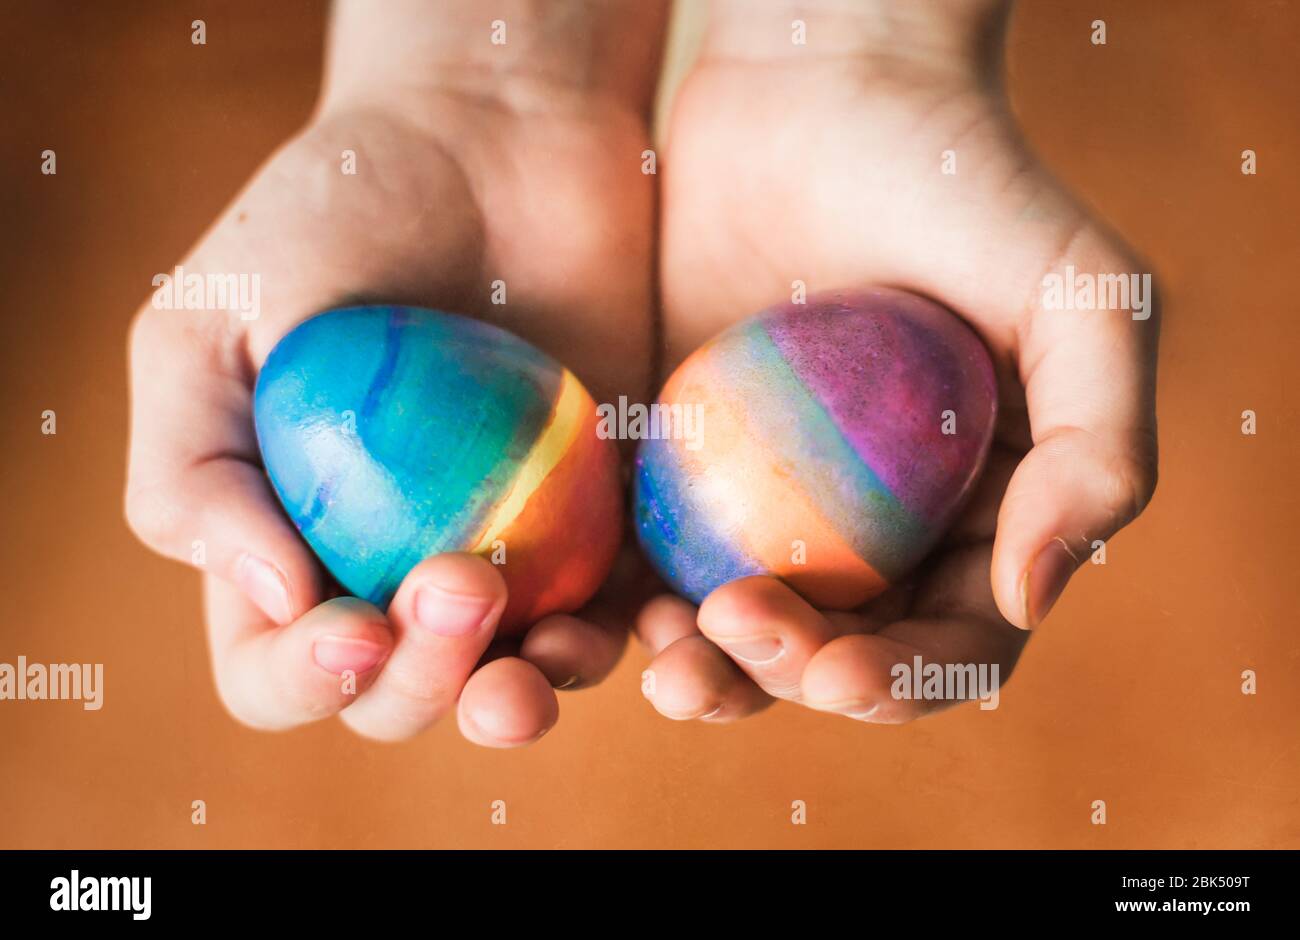 Primer plano de manos sosteniendo dos huevos de Pascua de colores brillantes. Foto de stock